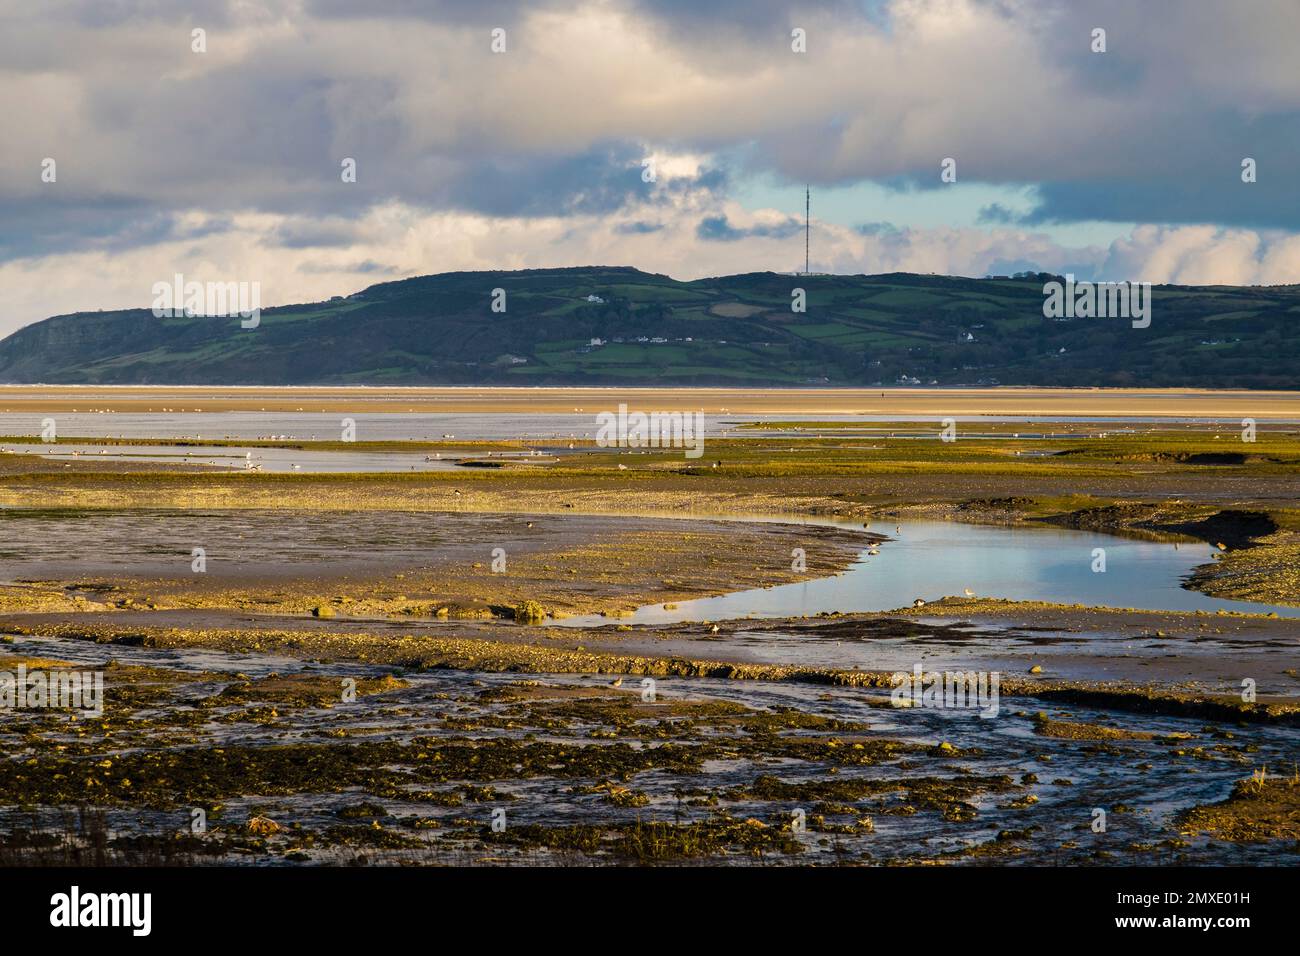 Les canards et les oiseaux à gué se nourrissent dans les vasières de marée lorsque la marée arrive à Red Wharf Bay (Traeth Coch) Benllech Isle of Anglesey (Ynys mon) pays de Galles Royaume-Uni Banque D'Images